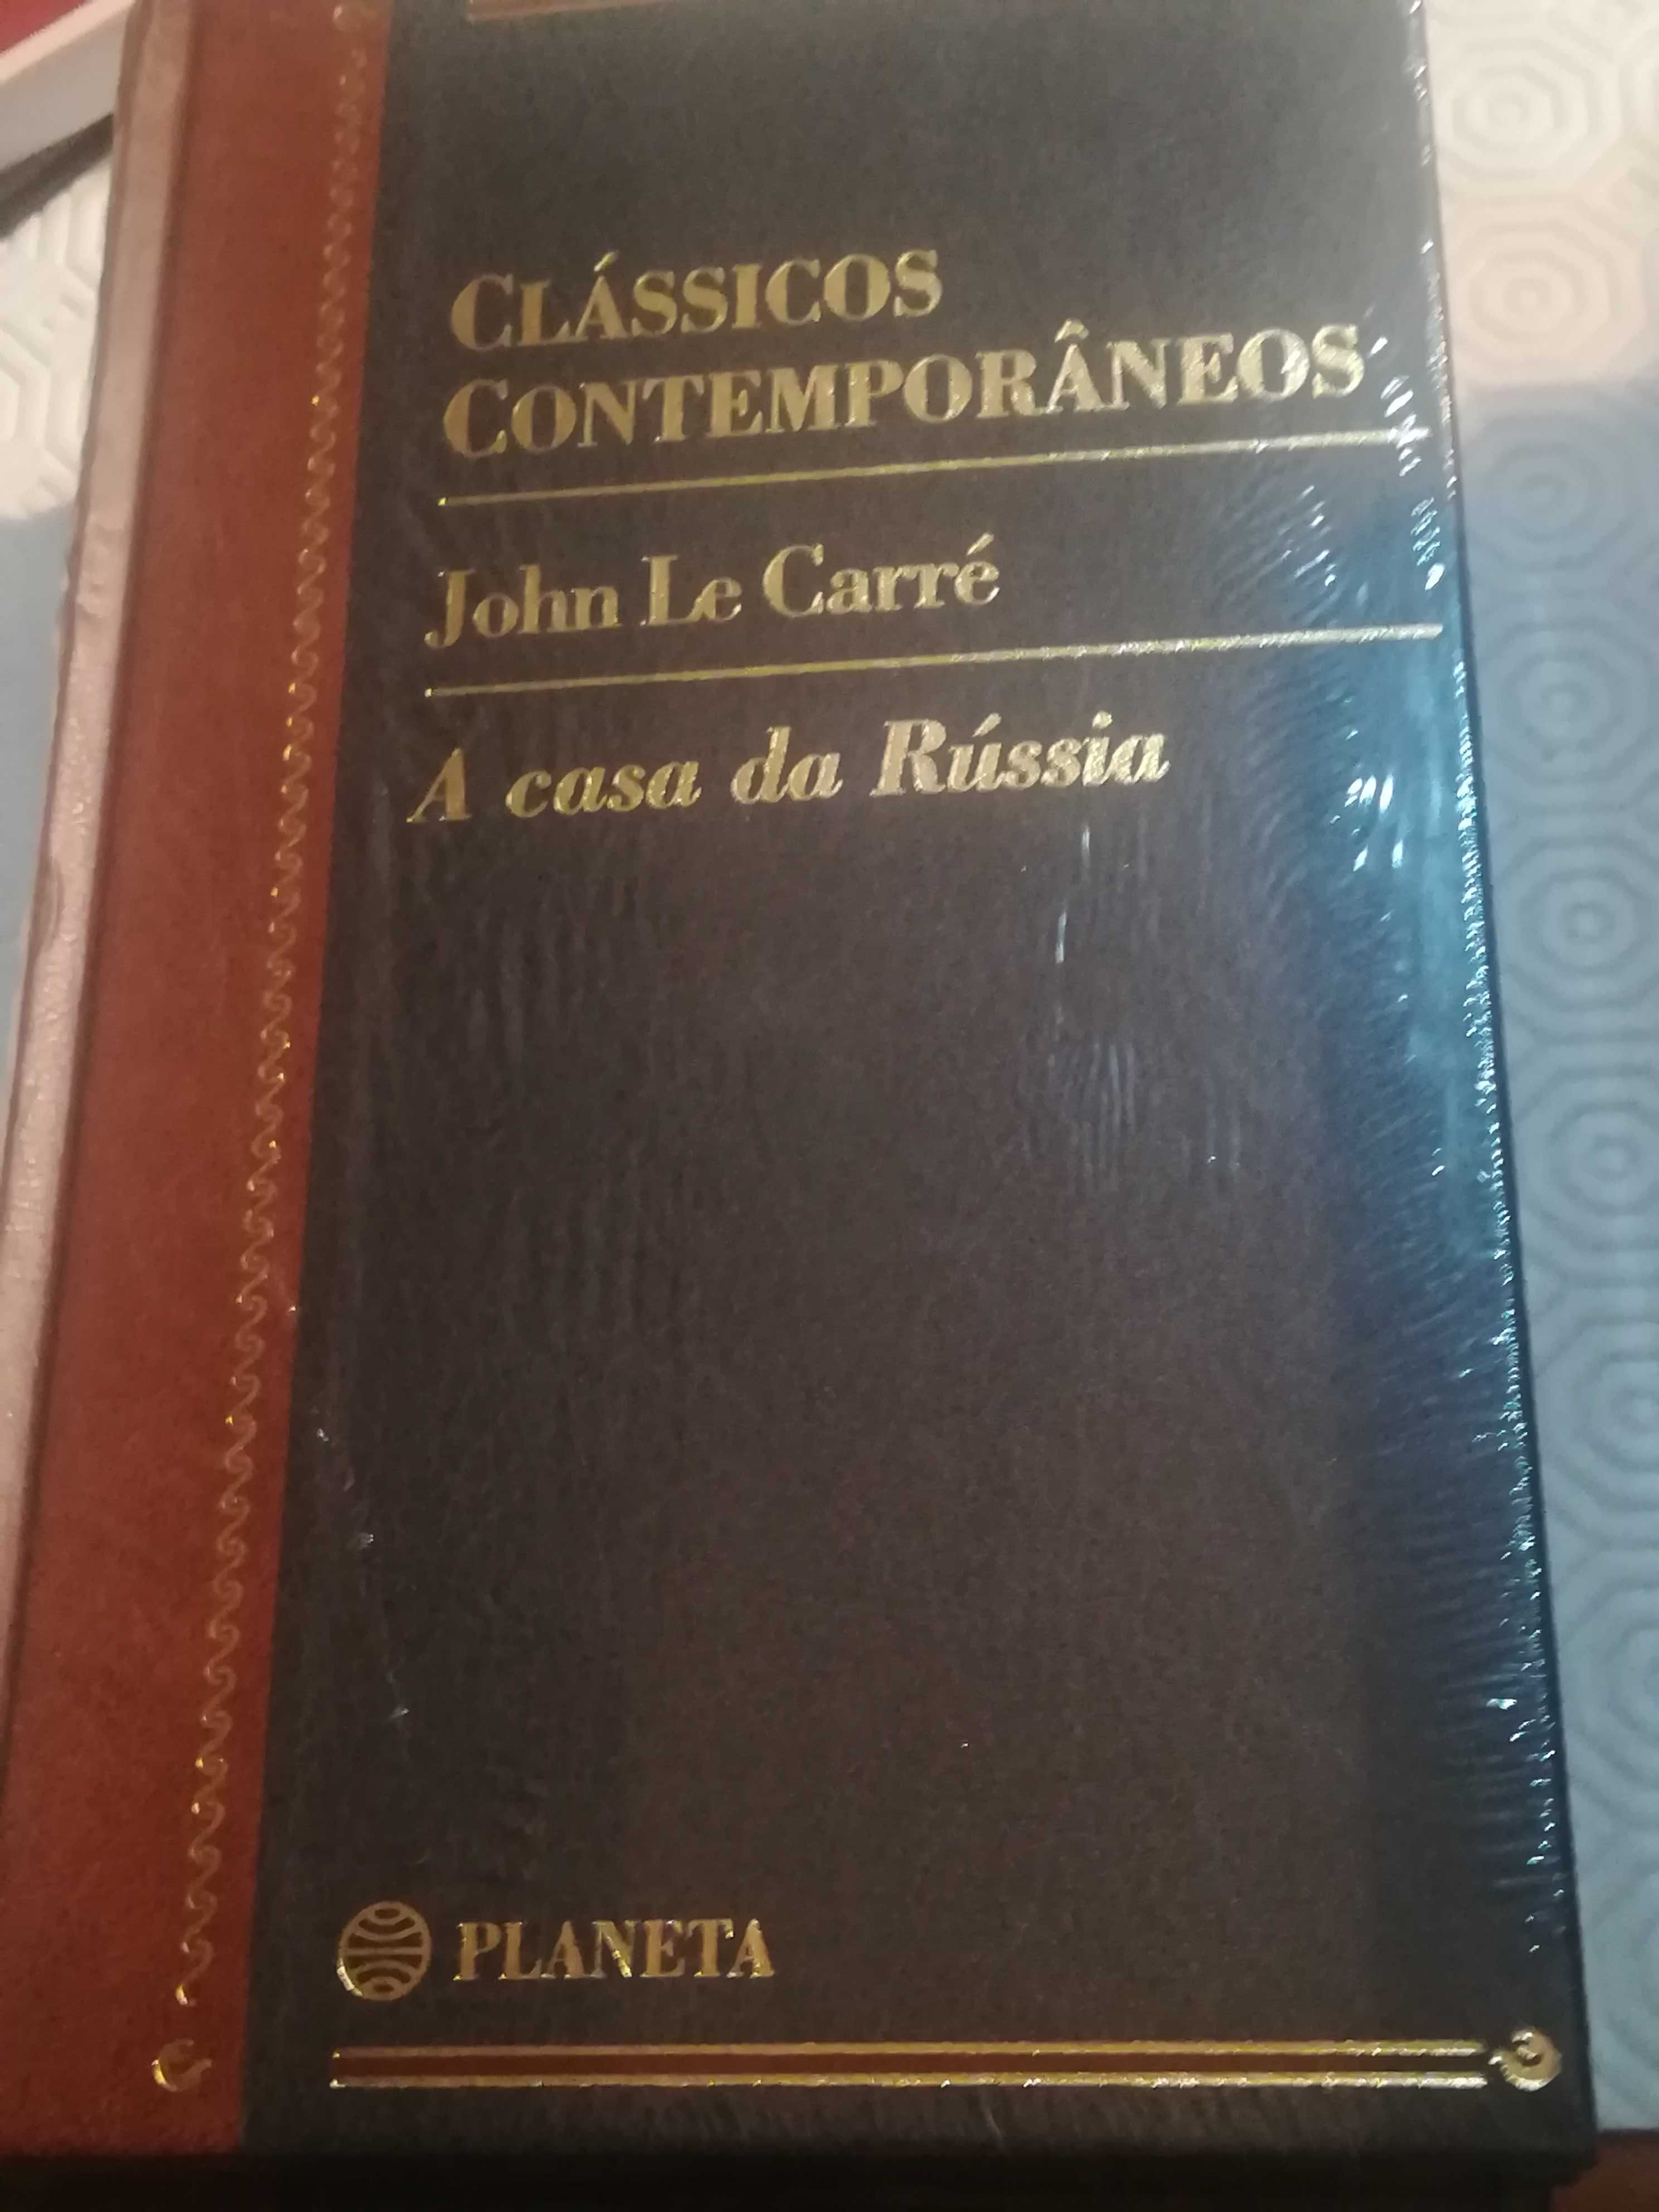 Livros novos Clássicos Contemporâneos Mário Vargas Llosa entre outros